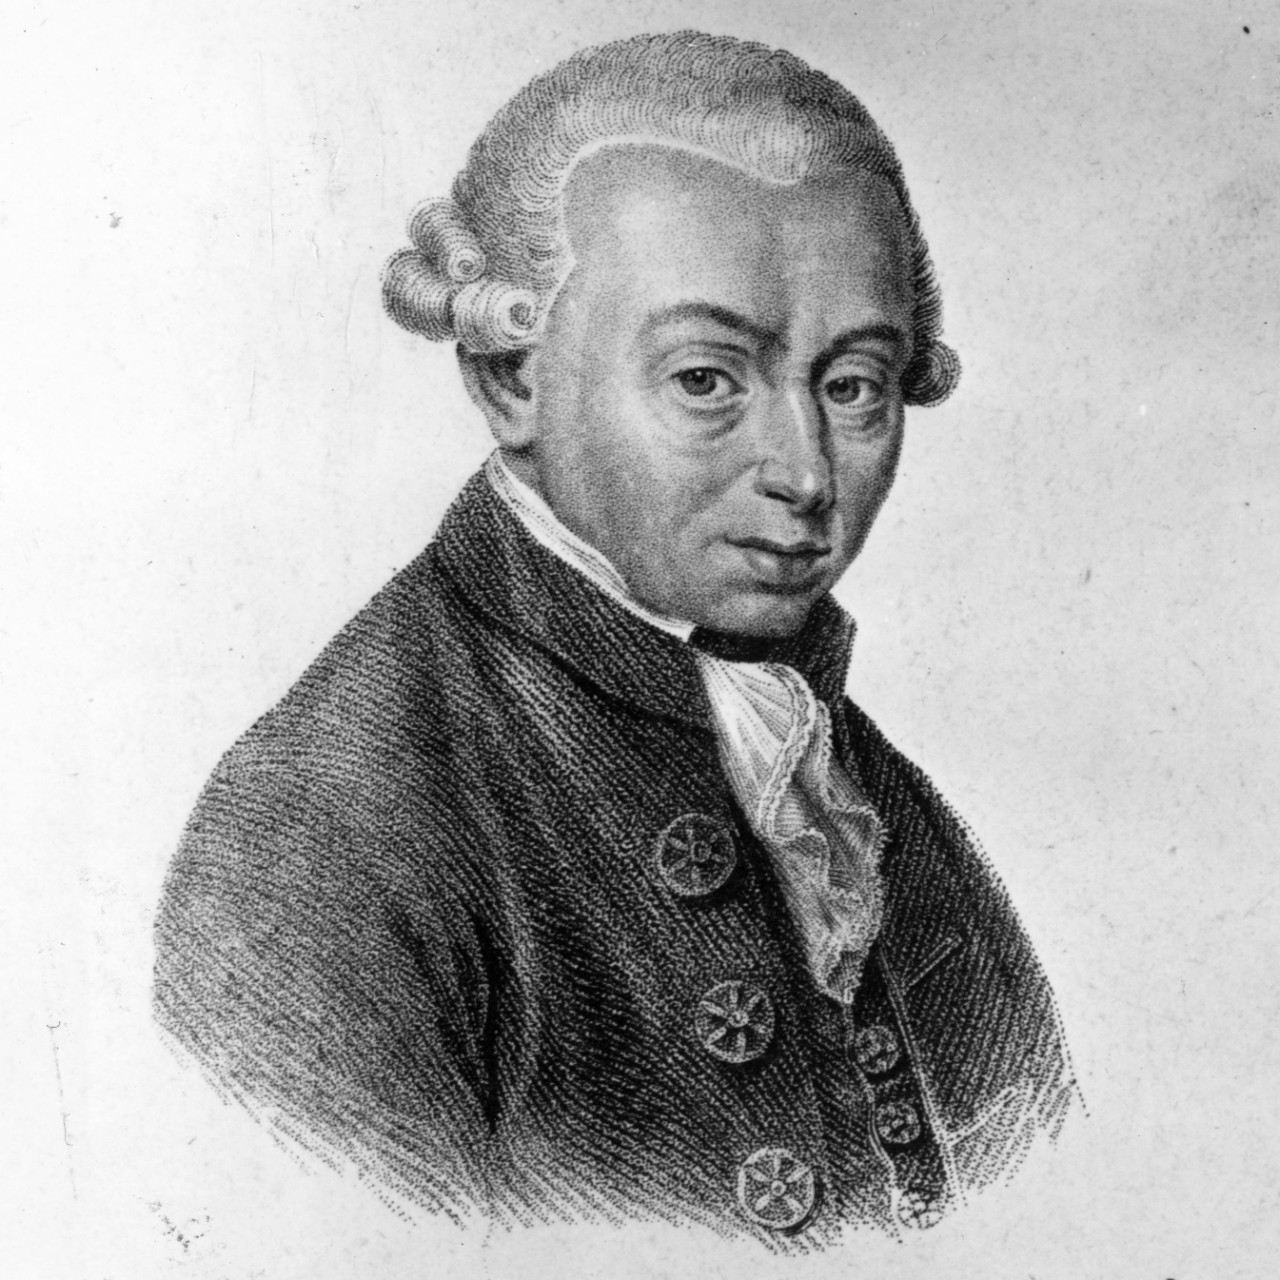 10. Emmanuel Kant